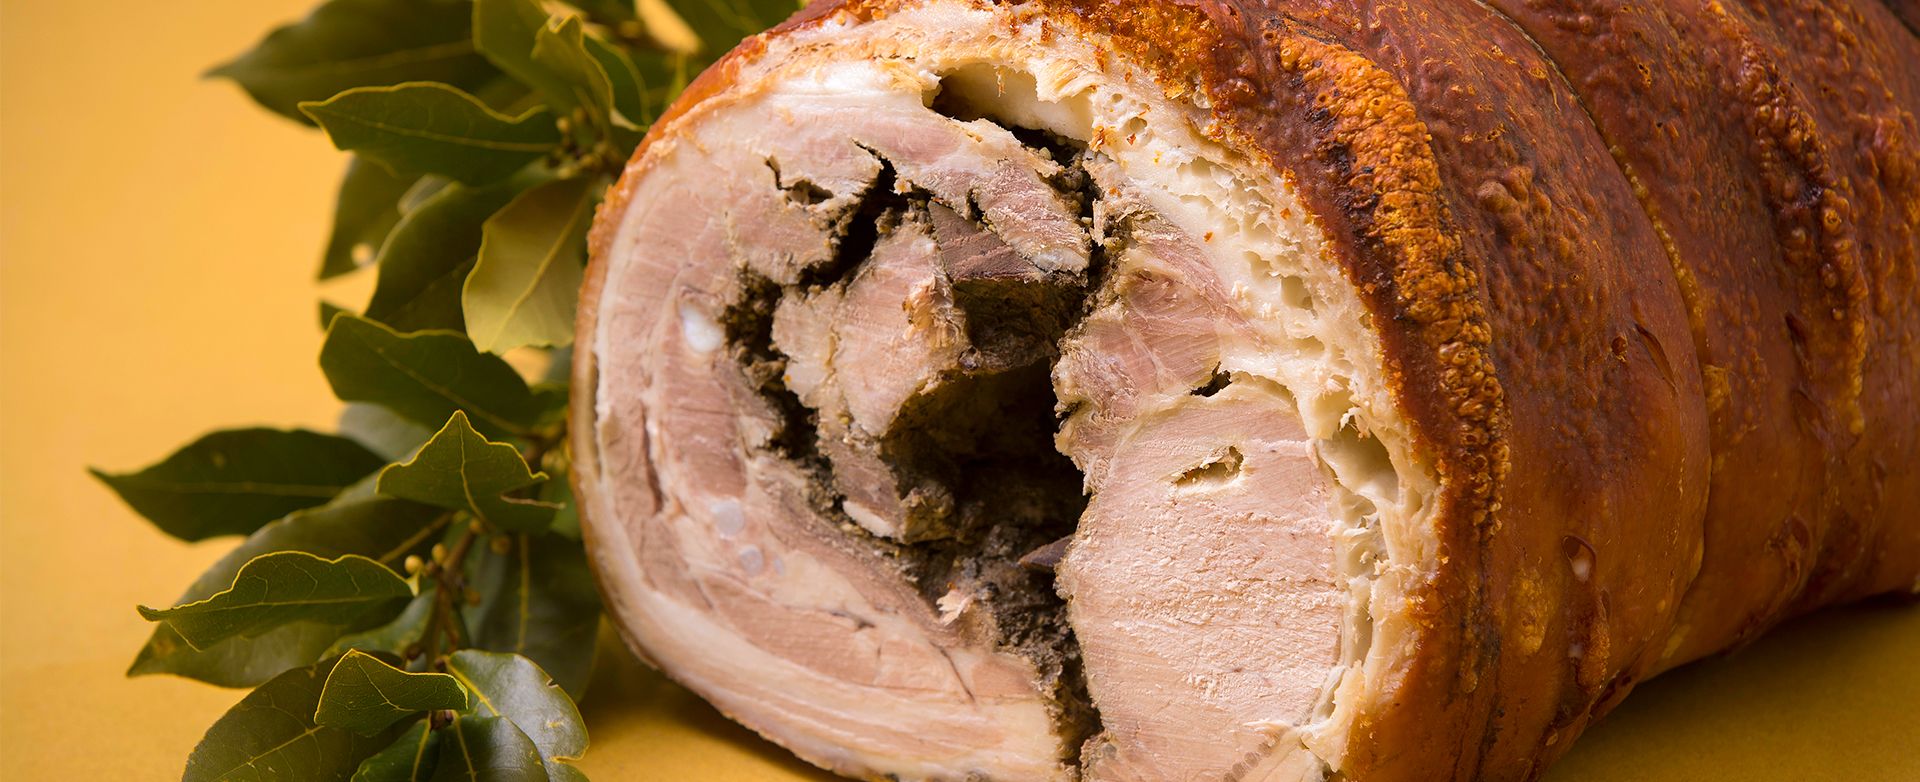 La porchetta, produit typique de l’Italie centrale et fruit de l'art antique du travail de la viande de porc